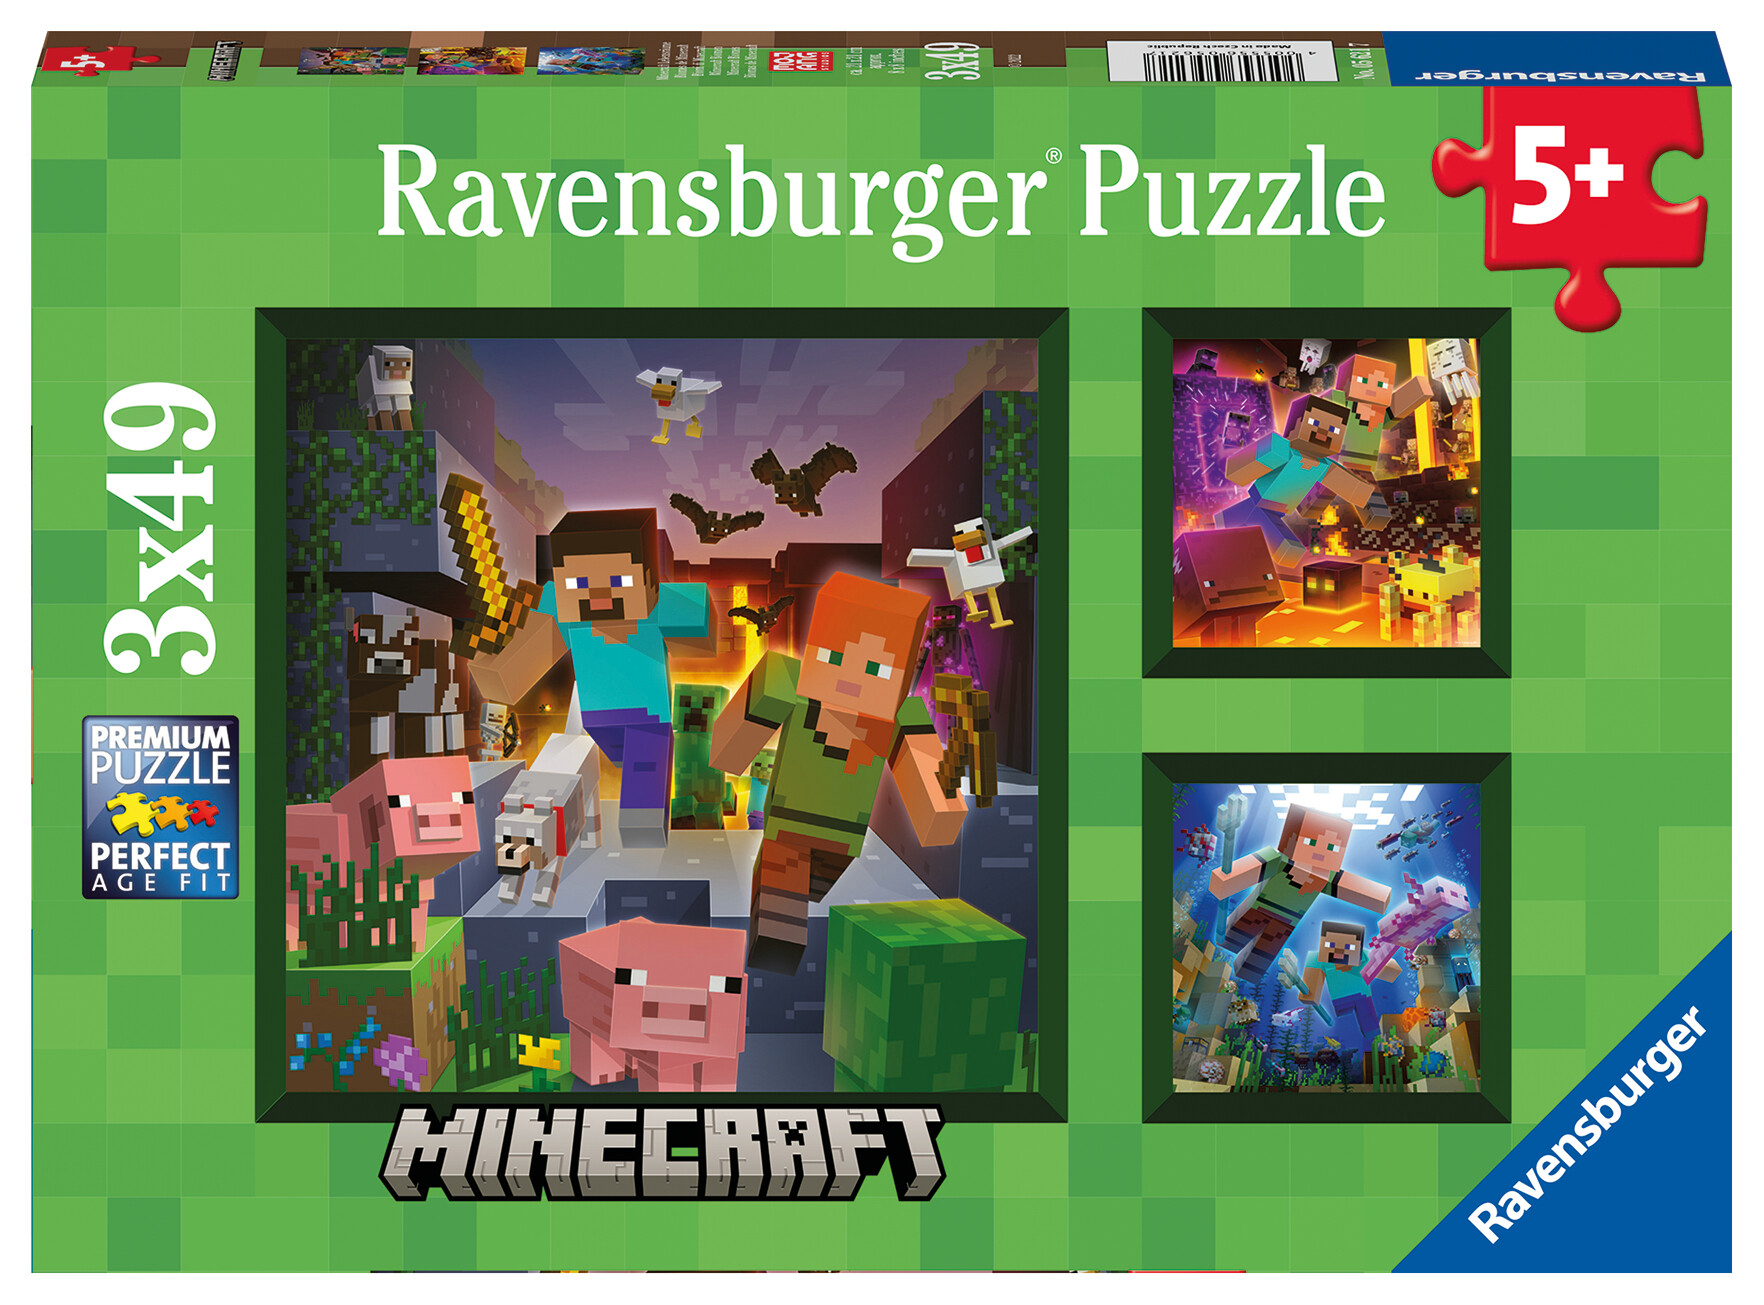 Ravensburger - puzzle minecraft, collezione 3x49, 3 puzzle da 49 pezzi, età raccomandata 5+ anni - MINECRAFT, RAVENSBURGER